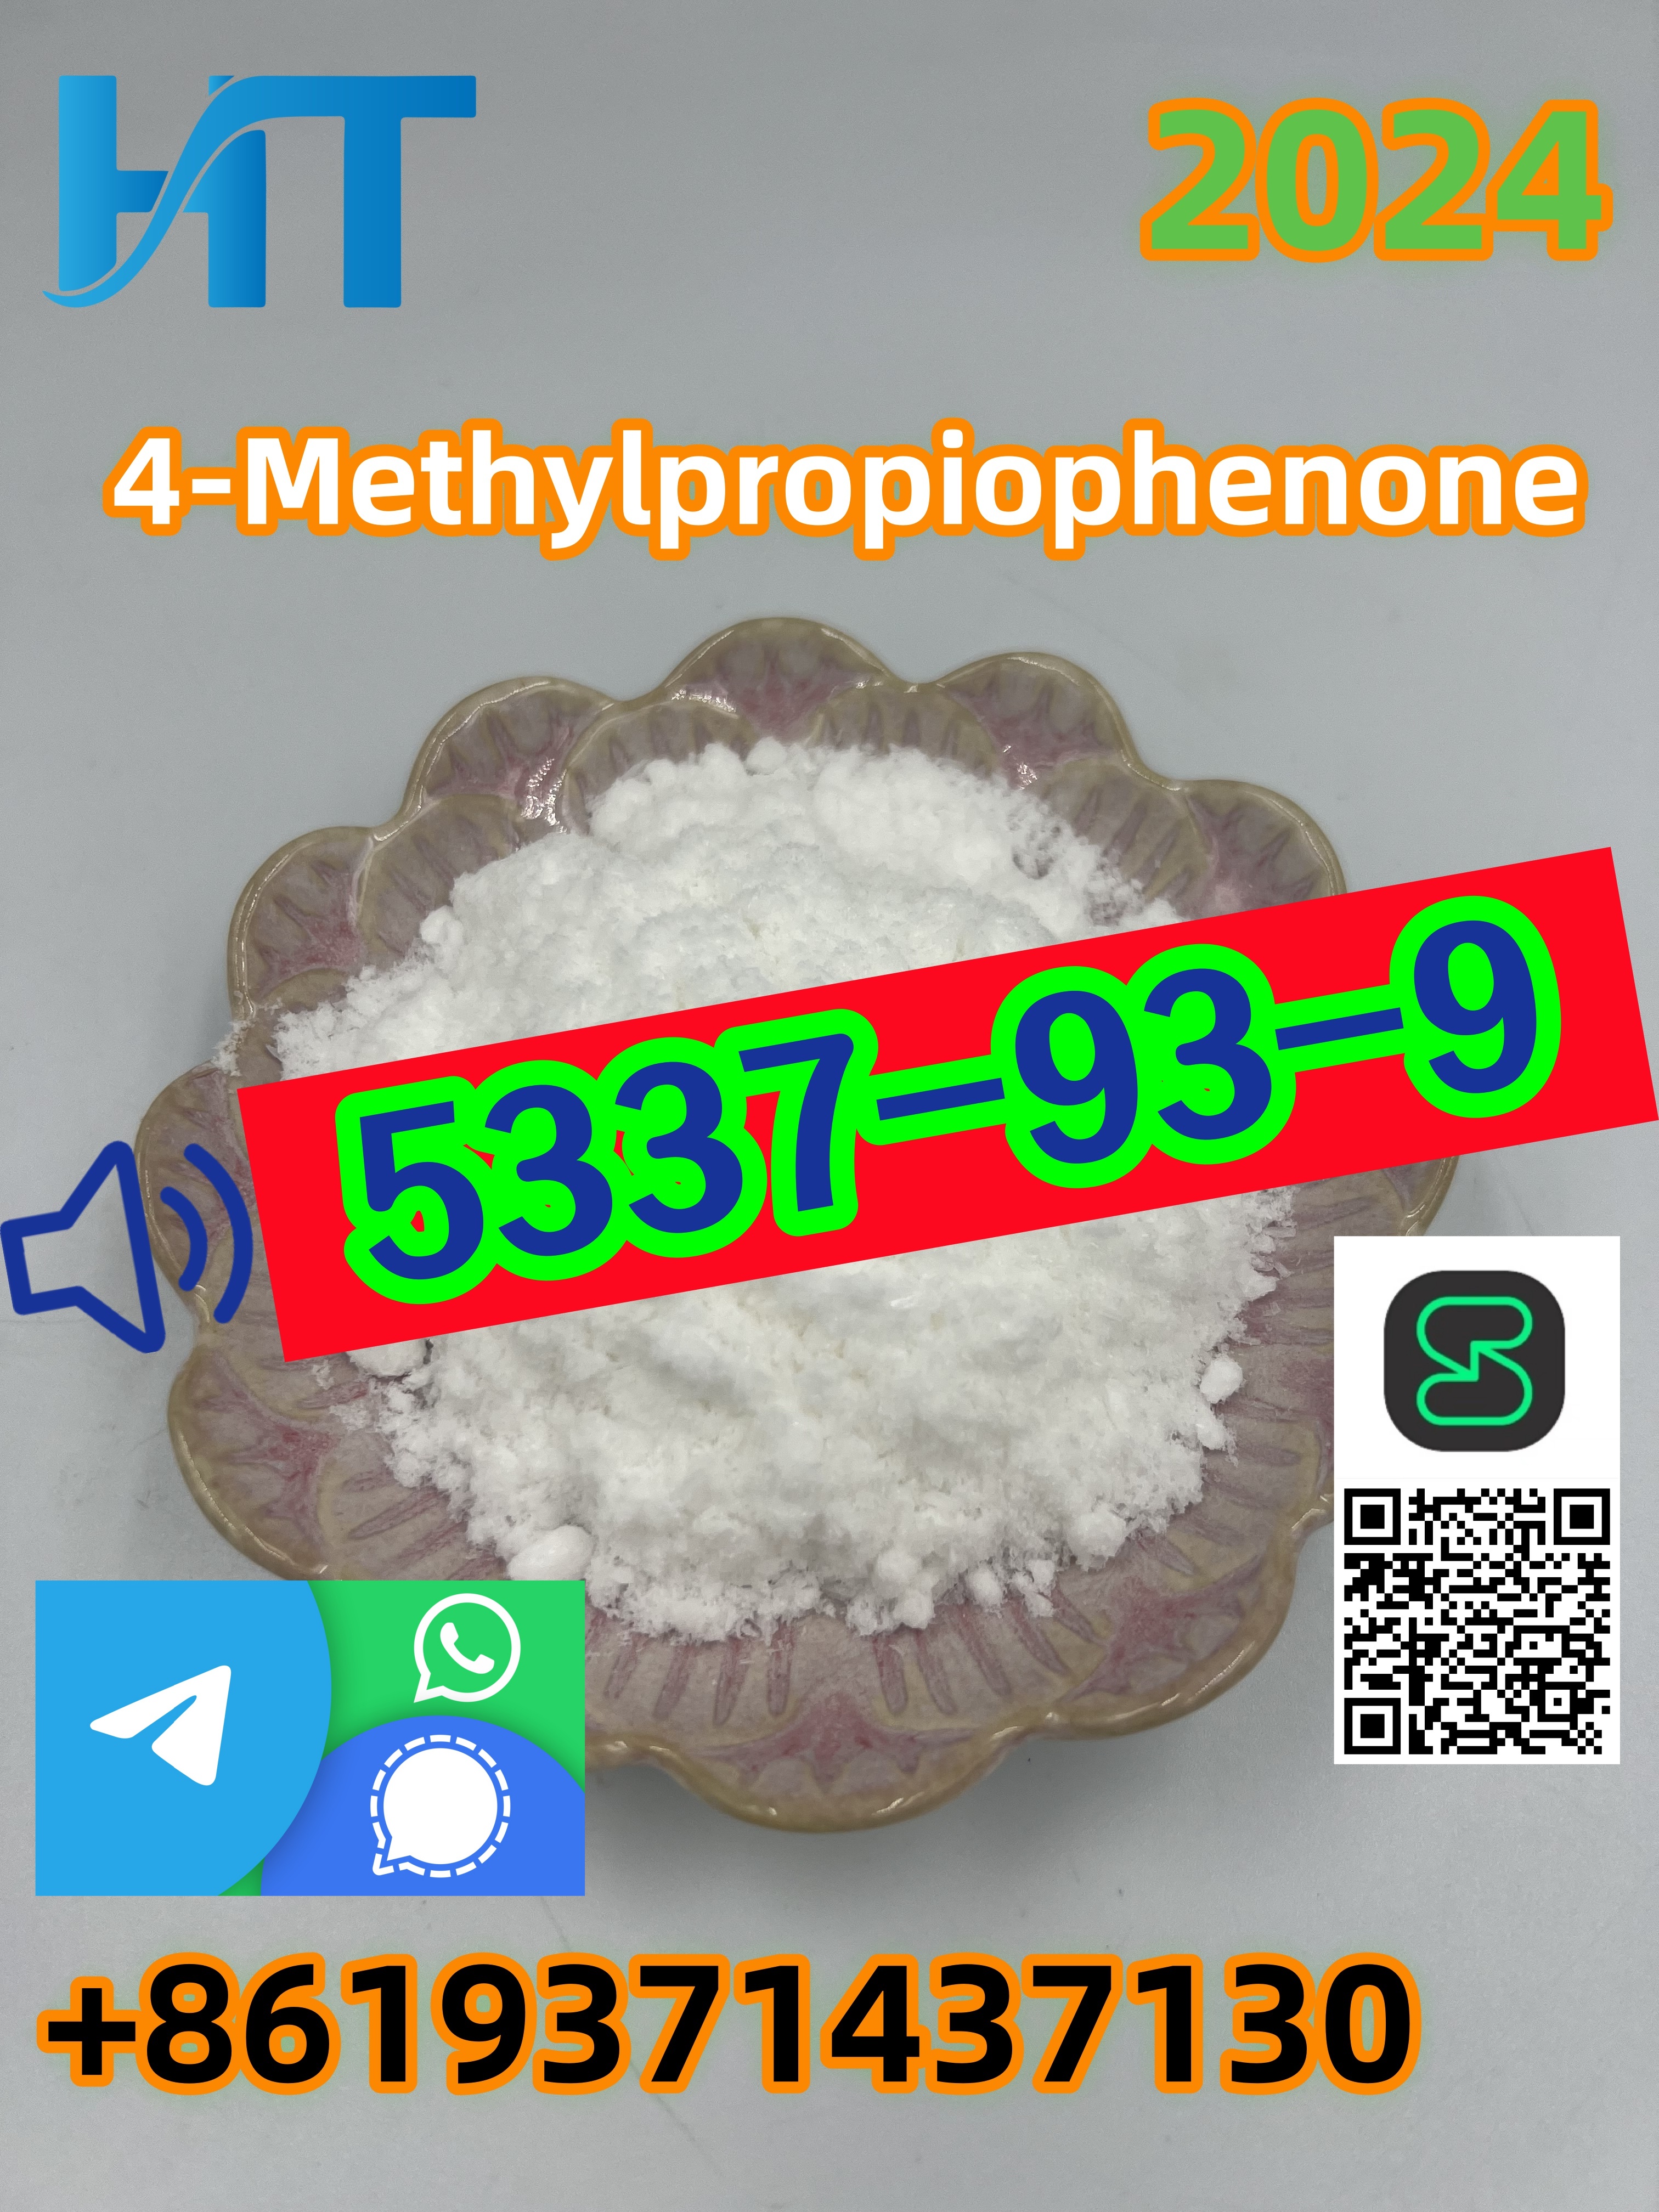 PMK and BMK 5337-93-9 4-Methylpropiophenone